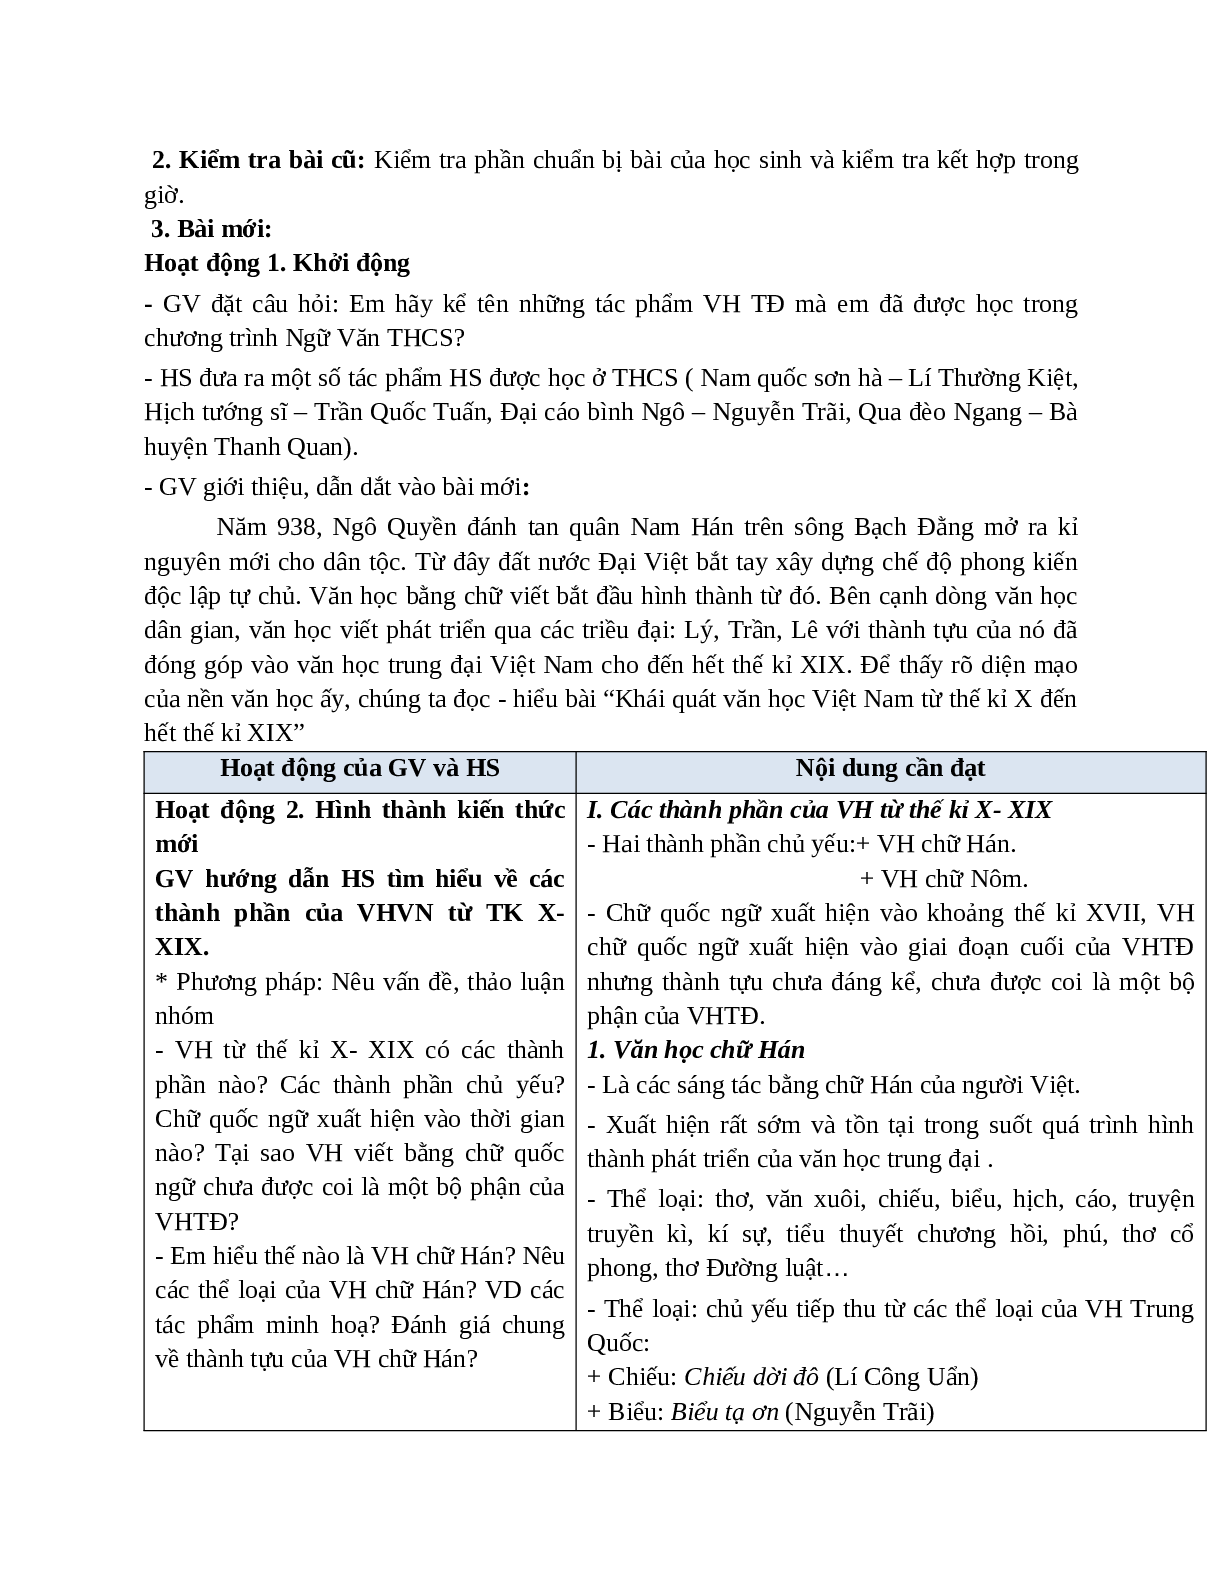 Giáo án Ngữ văn 10 tập 1 bài Khái quát văn học Việt Nam từ thế kỉ X đến hết thế kỉ XIX (Tiết 1) mới nhất (trang 2)